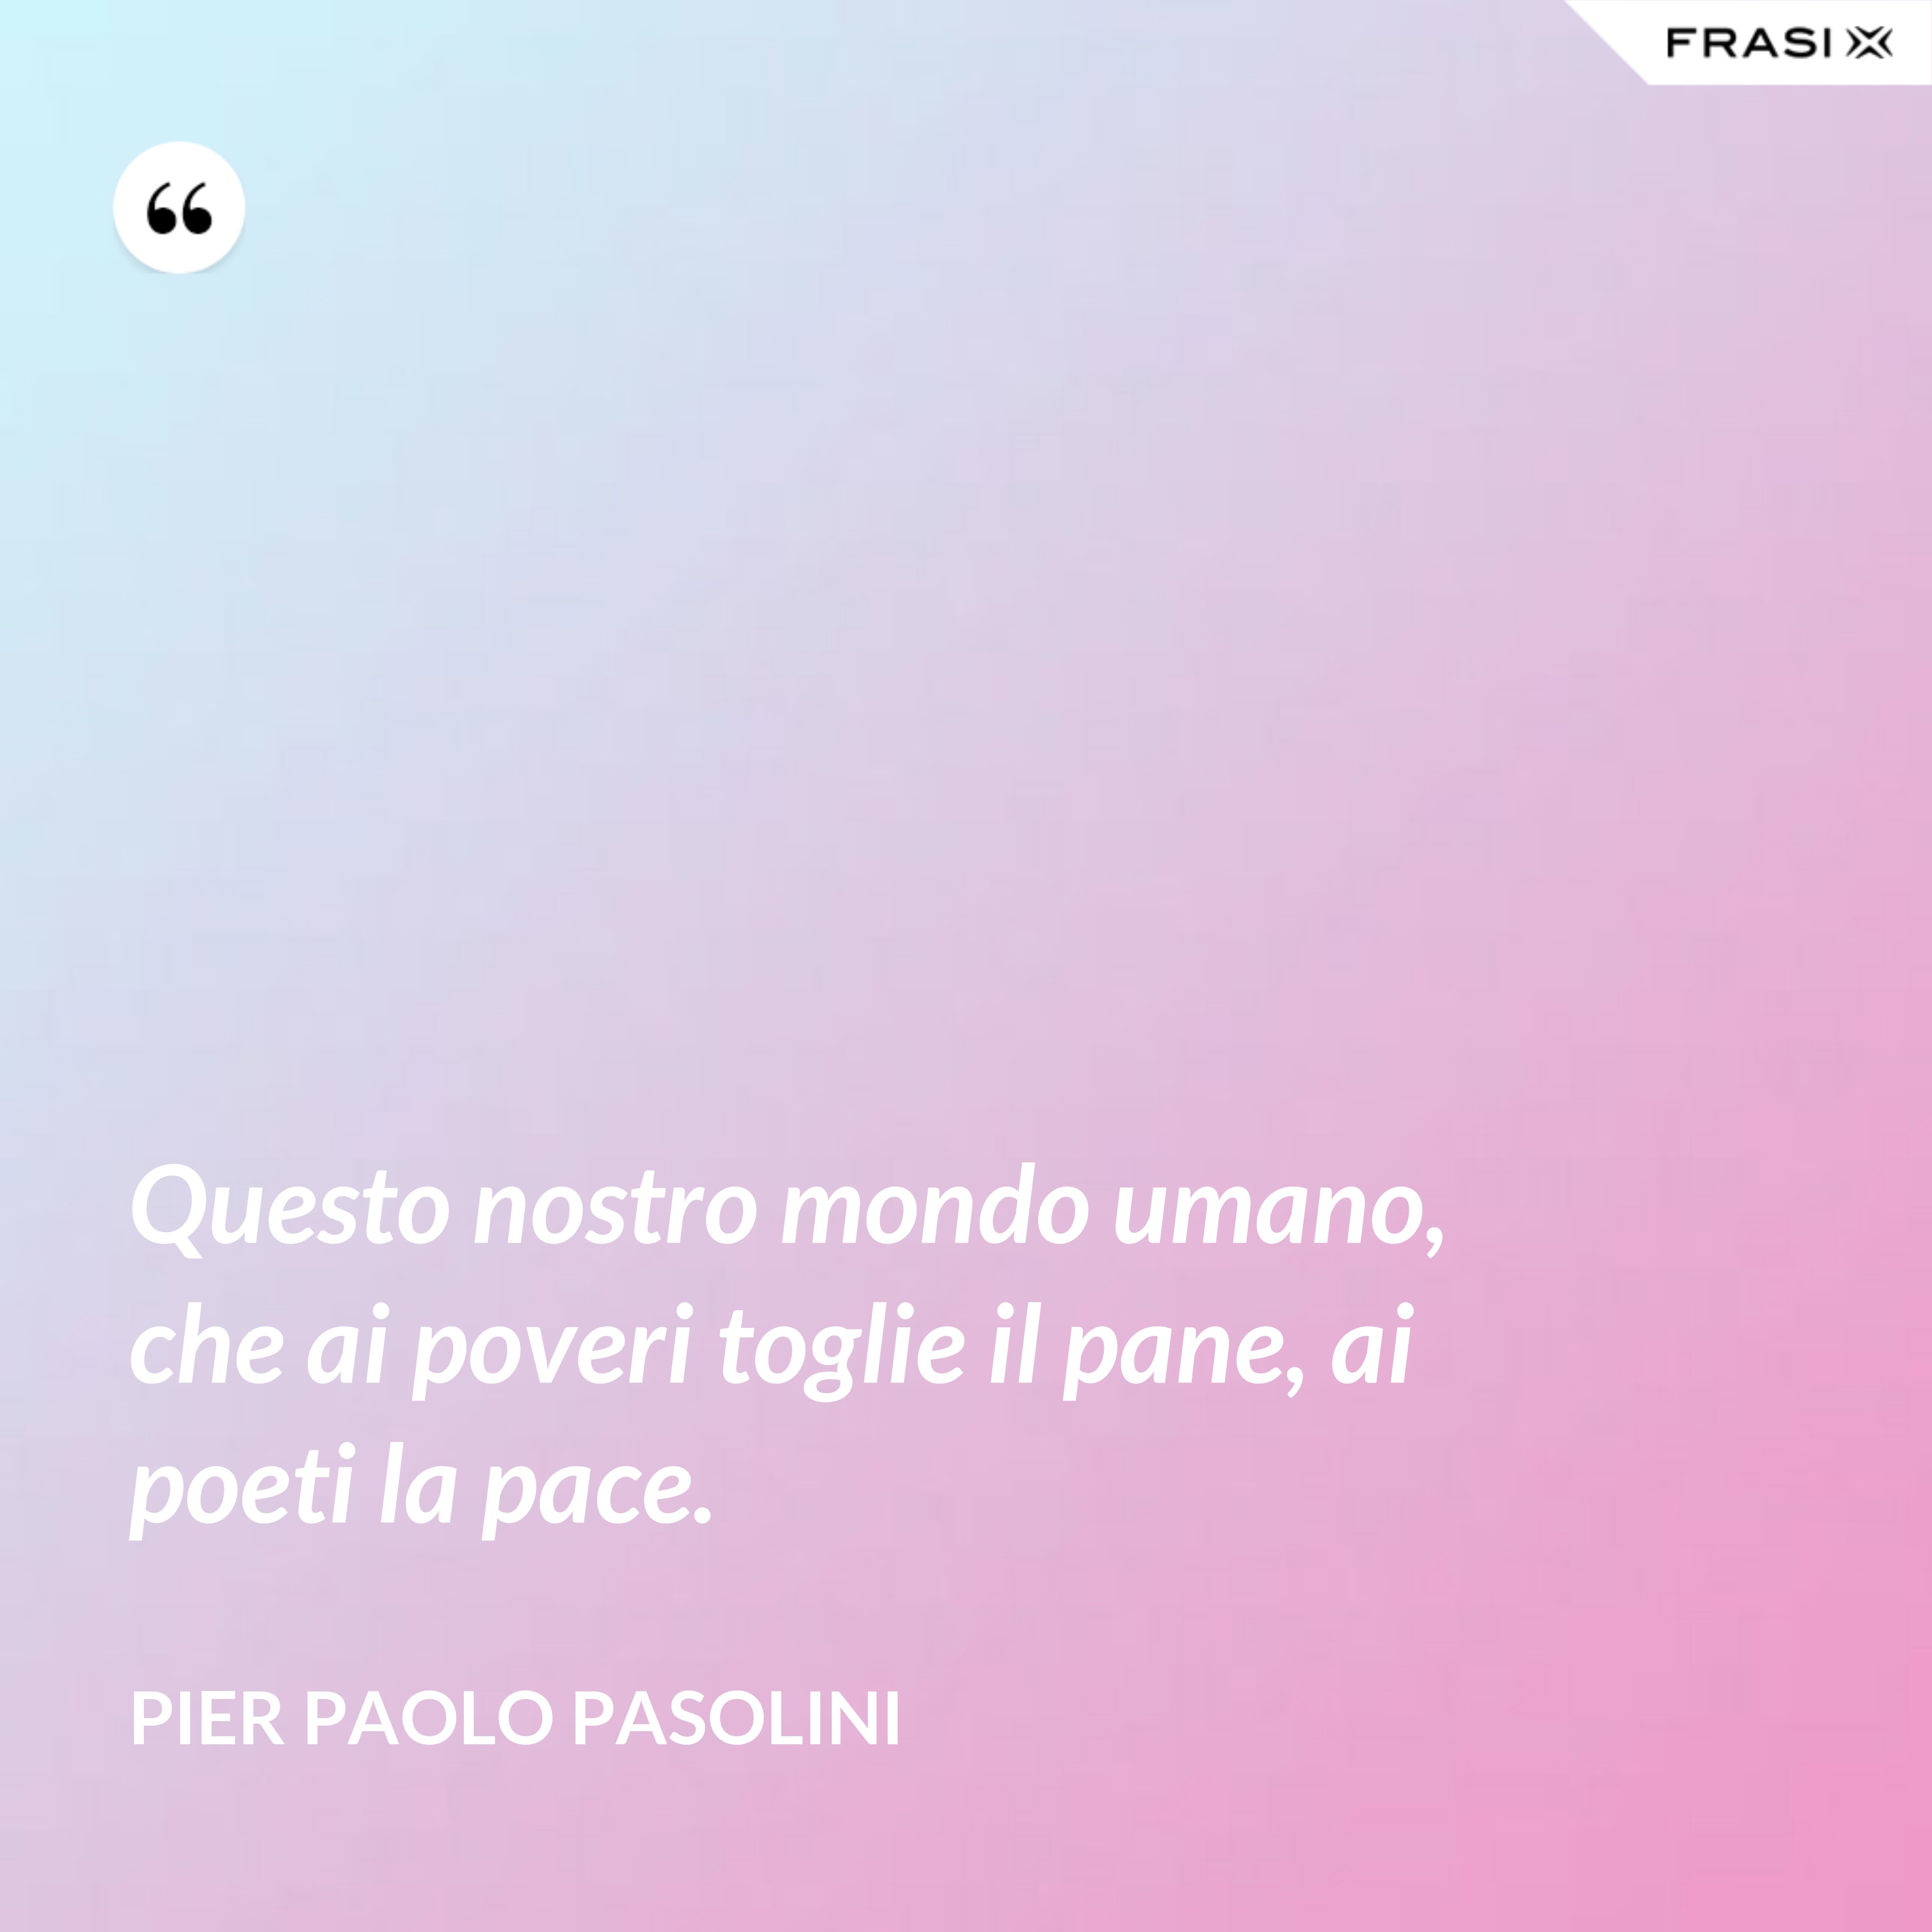 Questo nostro mondo umano, che ai poveri toglie il pane, ai poeti la pace. - Pier Paolo Pasolini